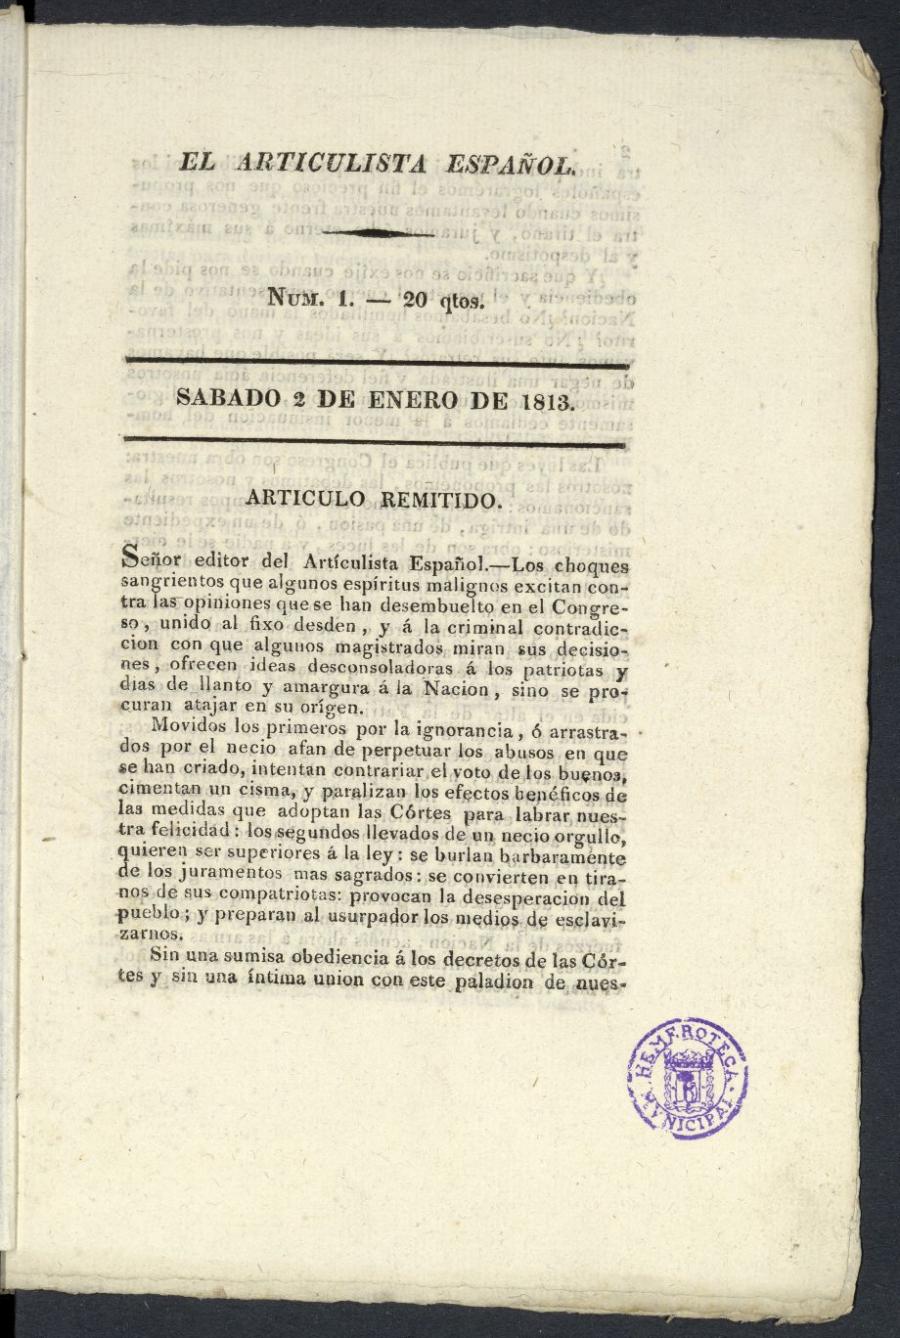 El Articulista Espaol, sbado 2 de enero de 1813